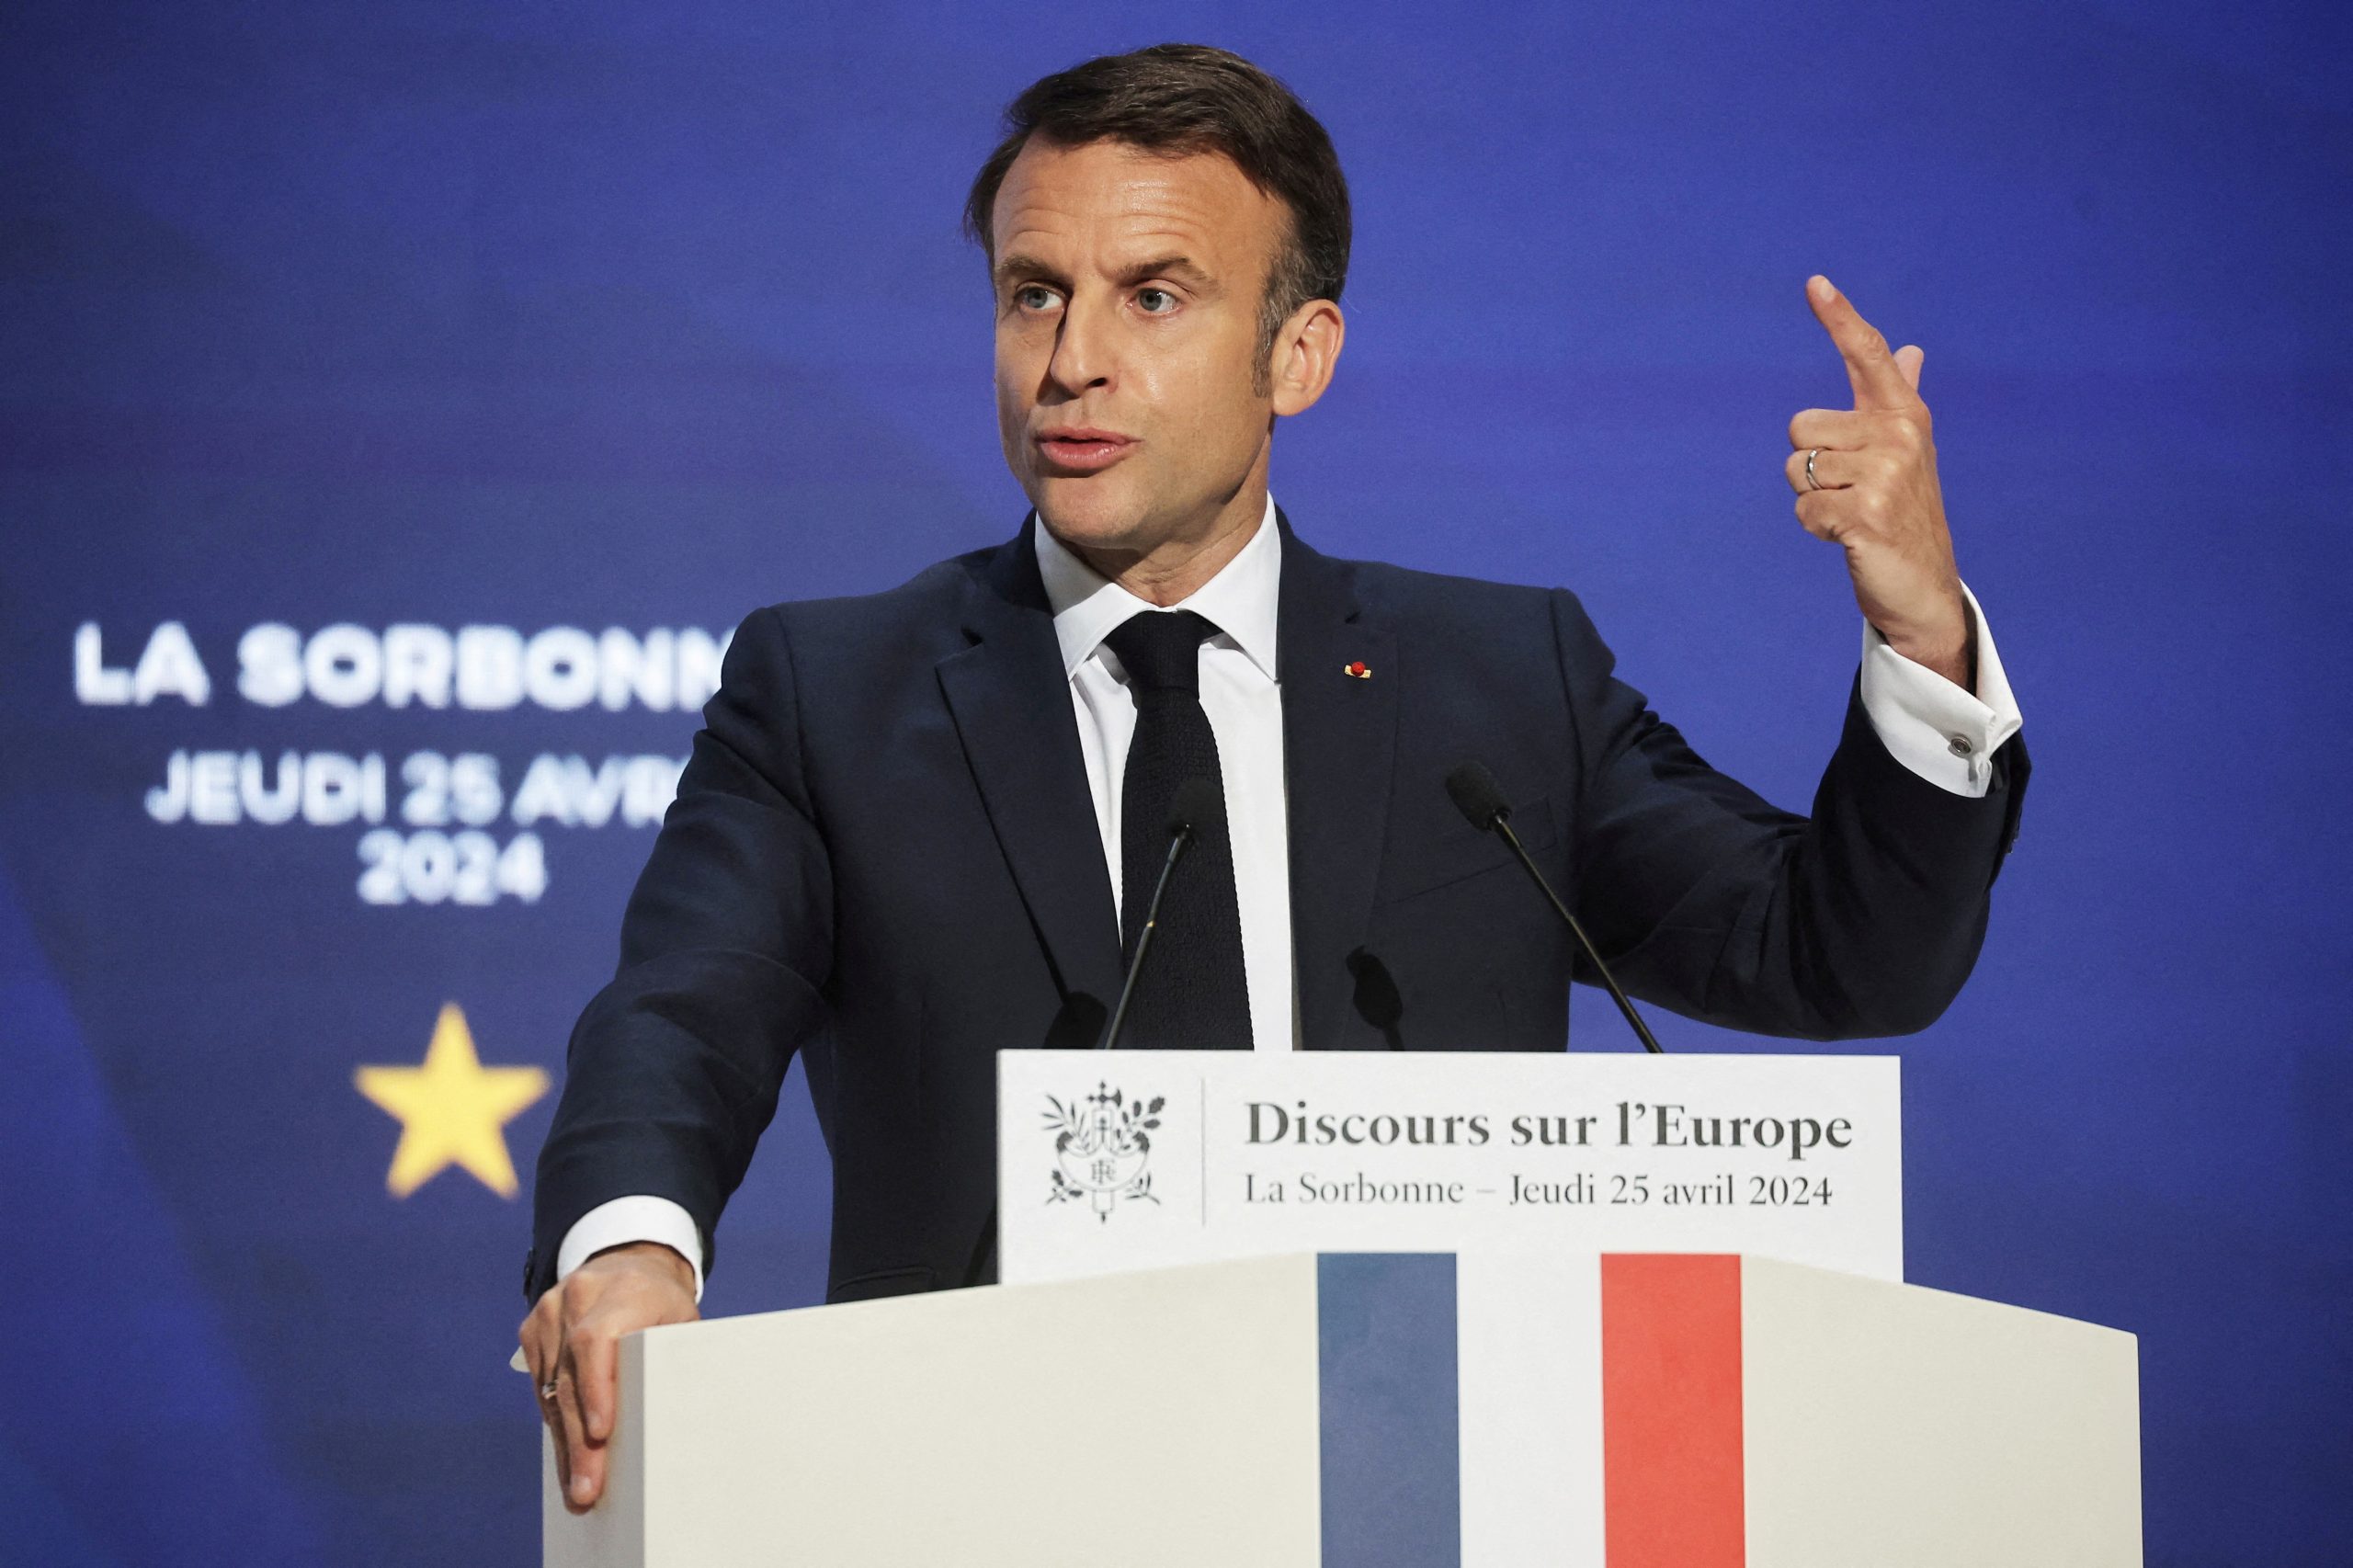 En su discurso del jueves en la Sorbona de París, el presidente Macron advirtió que enviar migrantes a países de África podría abrir una nueva forma de colonialismo